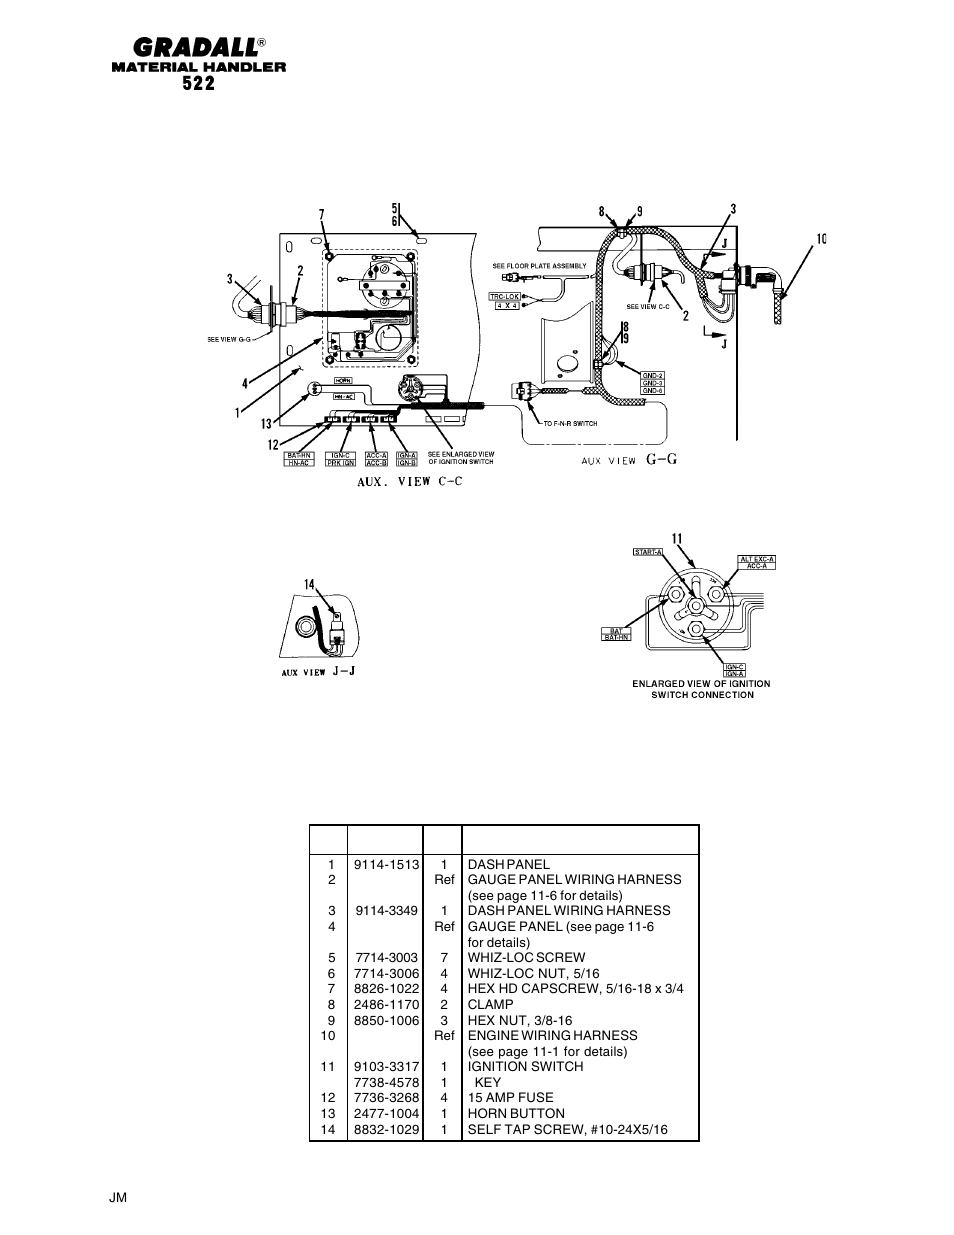 Electrical dash panel (522) | Gradall 524 Parts Manual User Manual